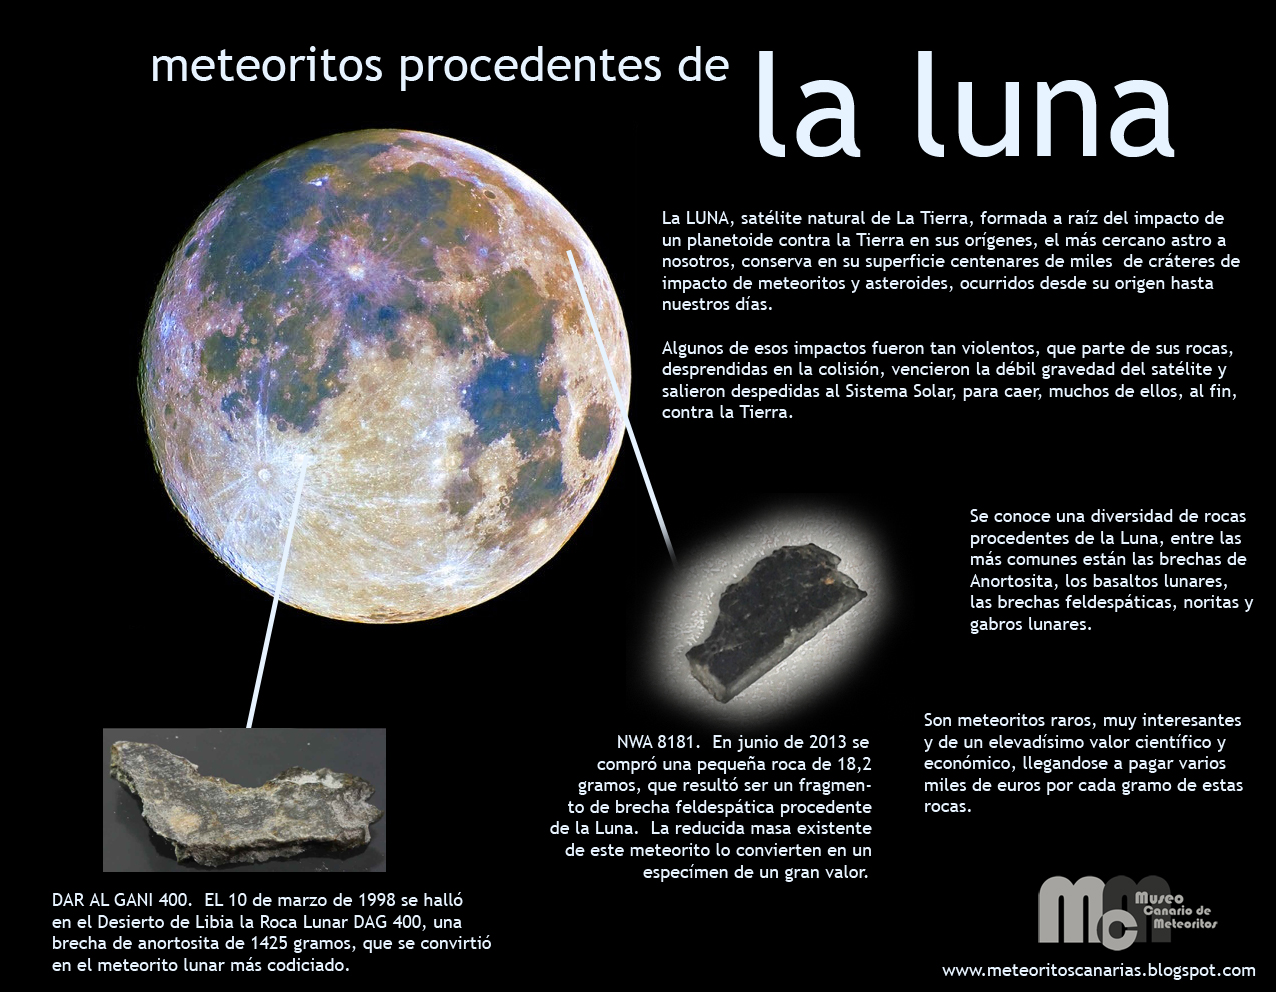 Lunar Meteorites